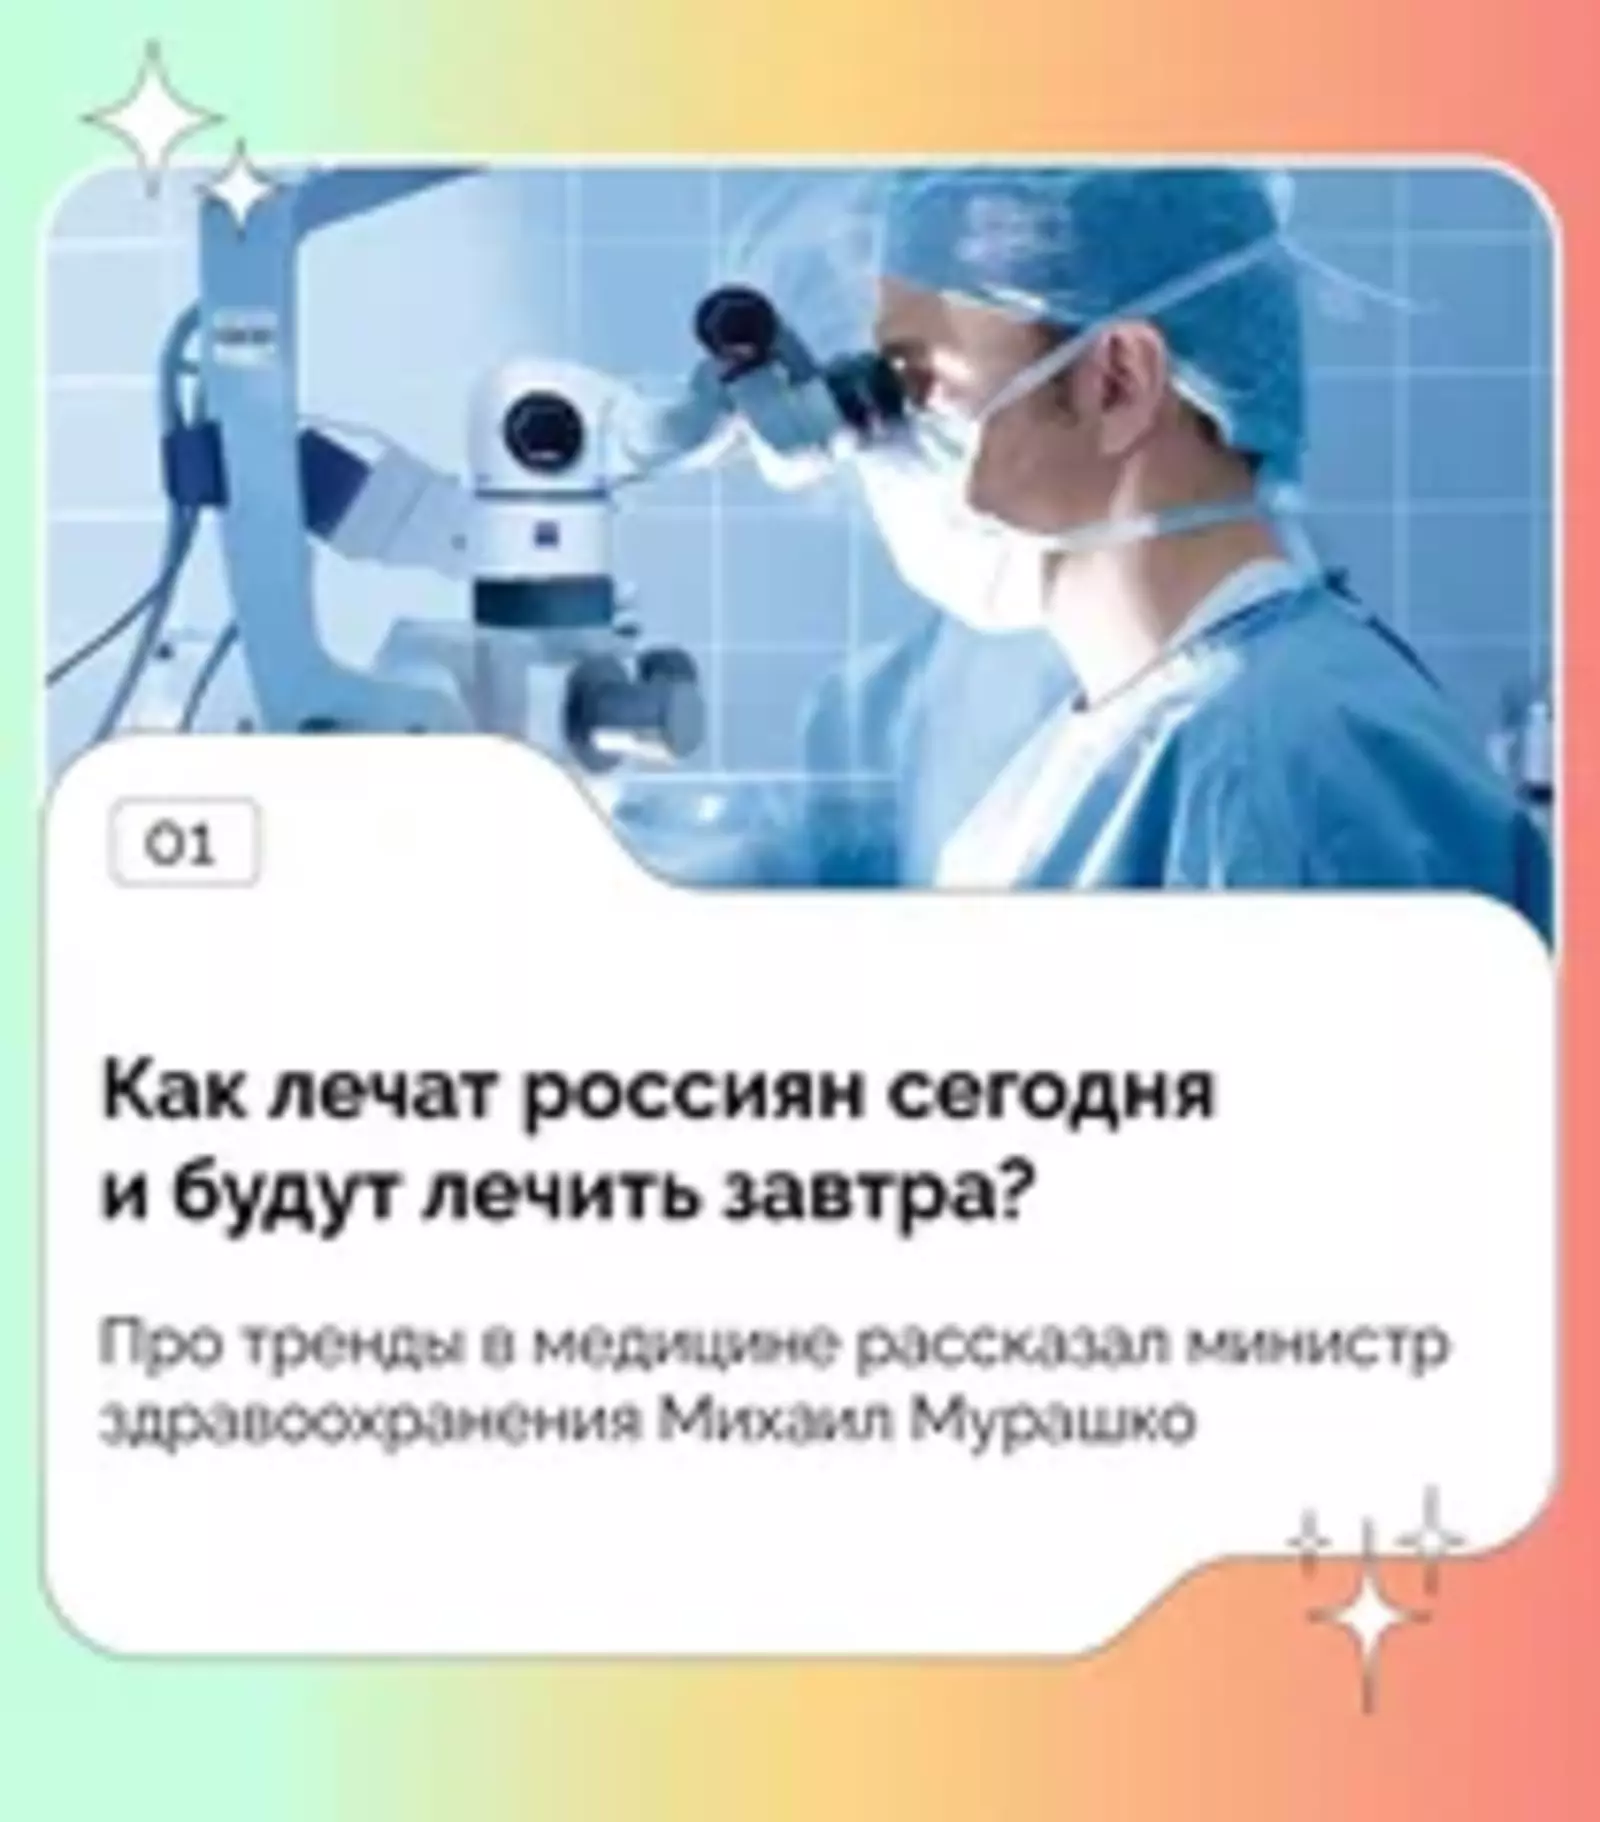 В Башкортостане на помощь врачам приходят настоящие роботы!